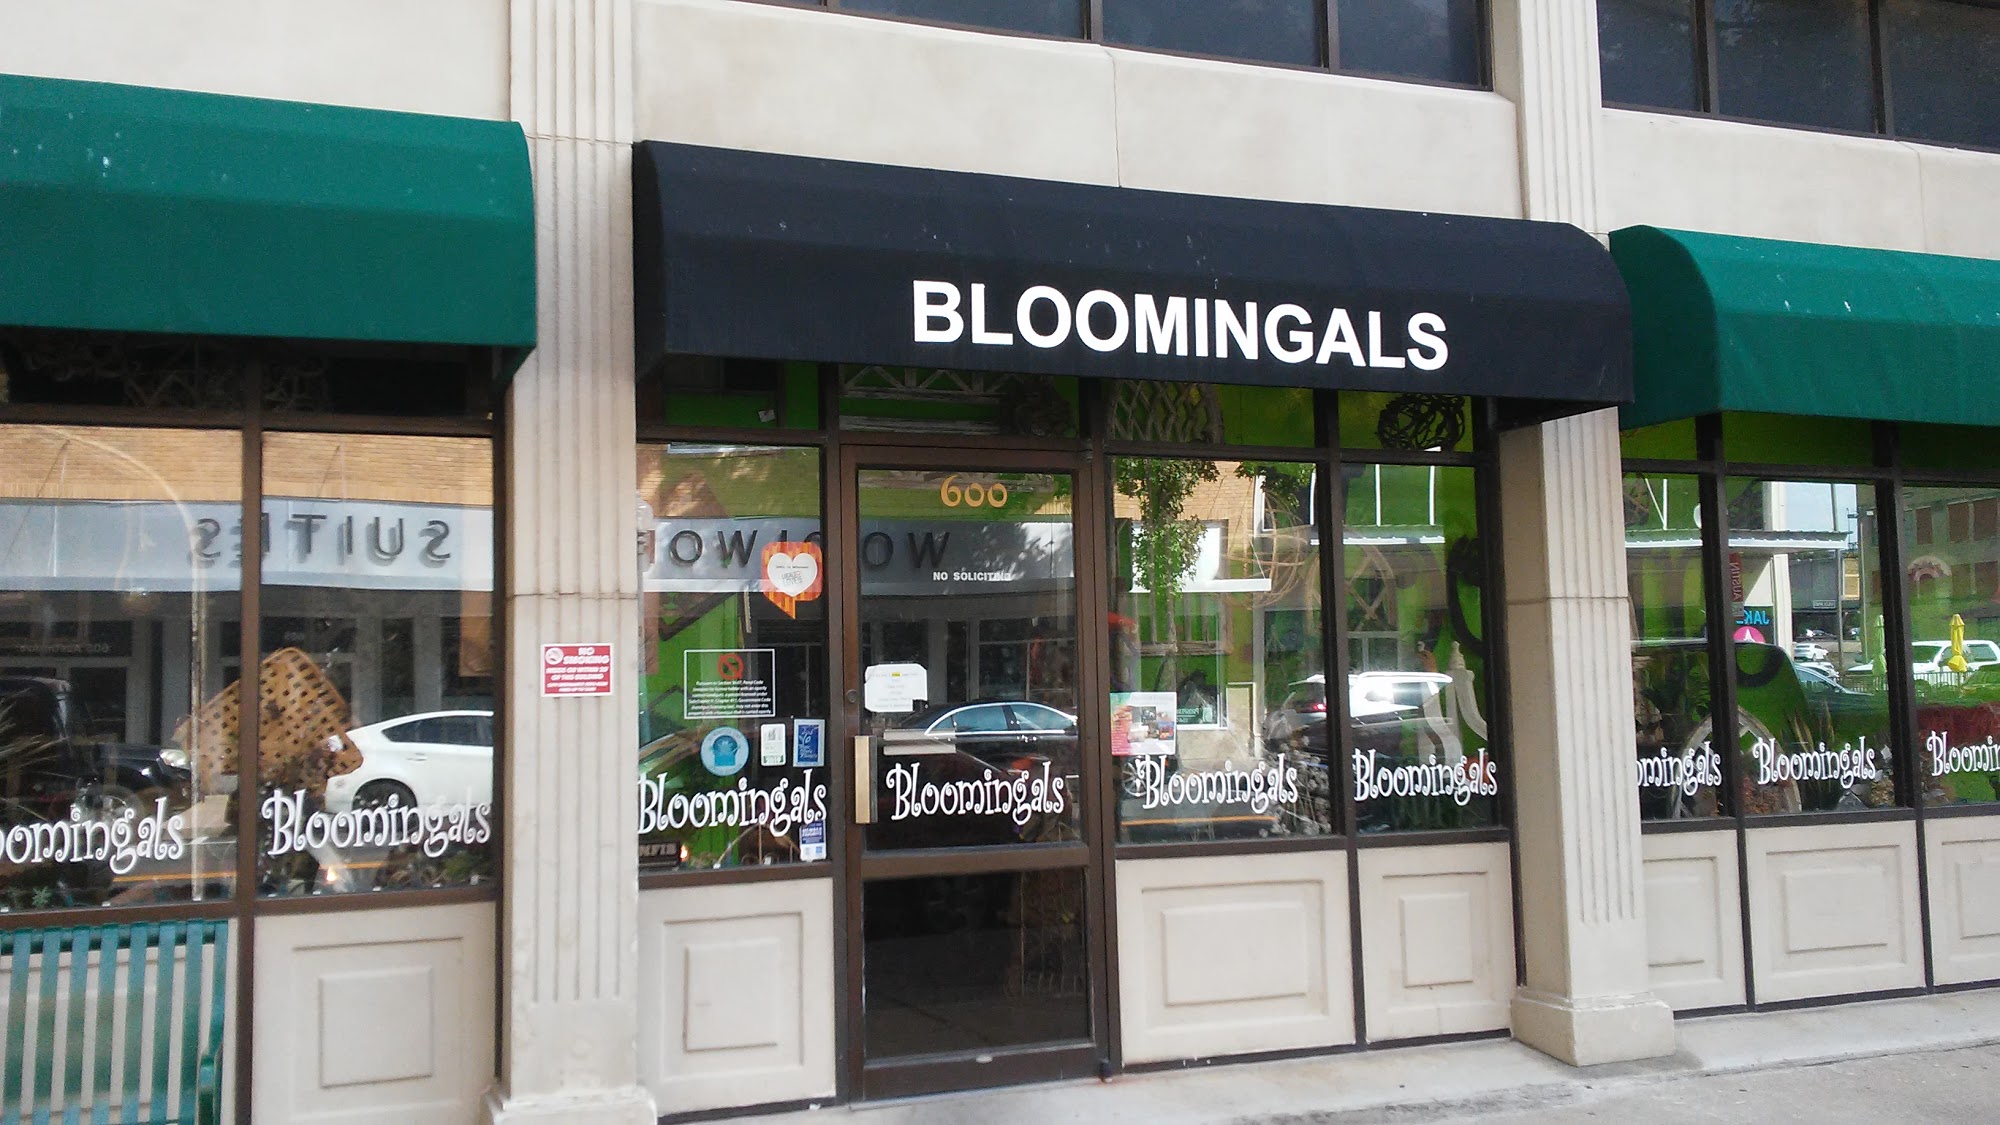 Bloomingals Floral Boutique